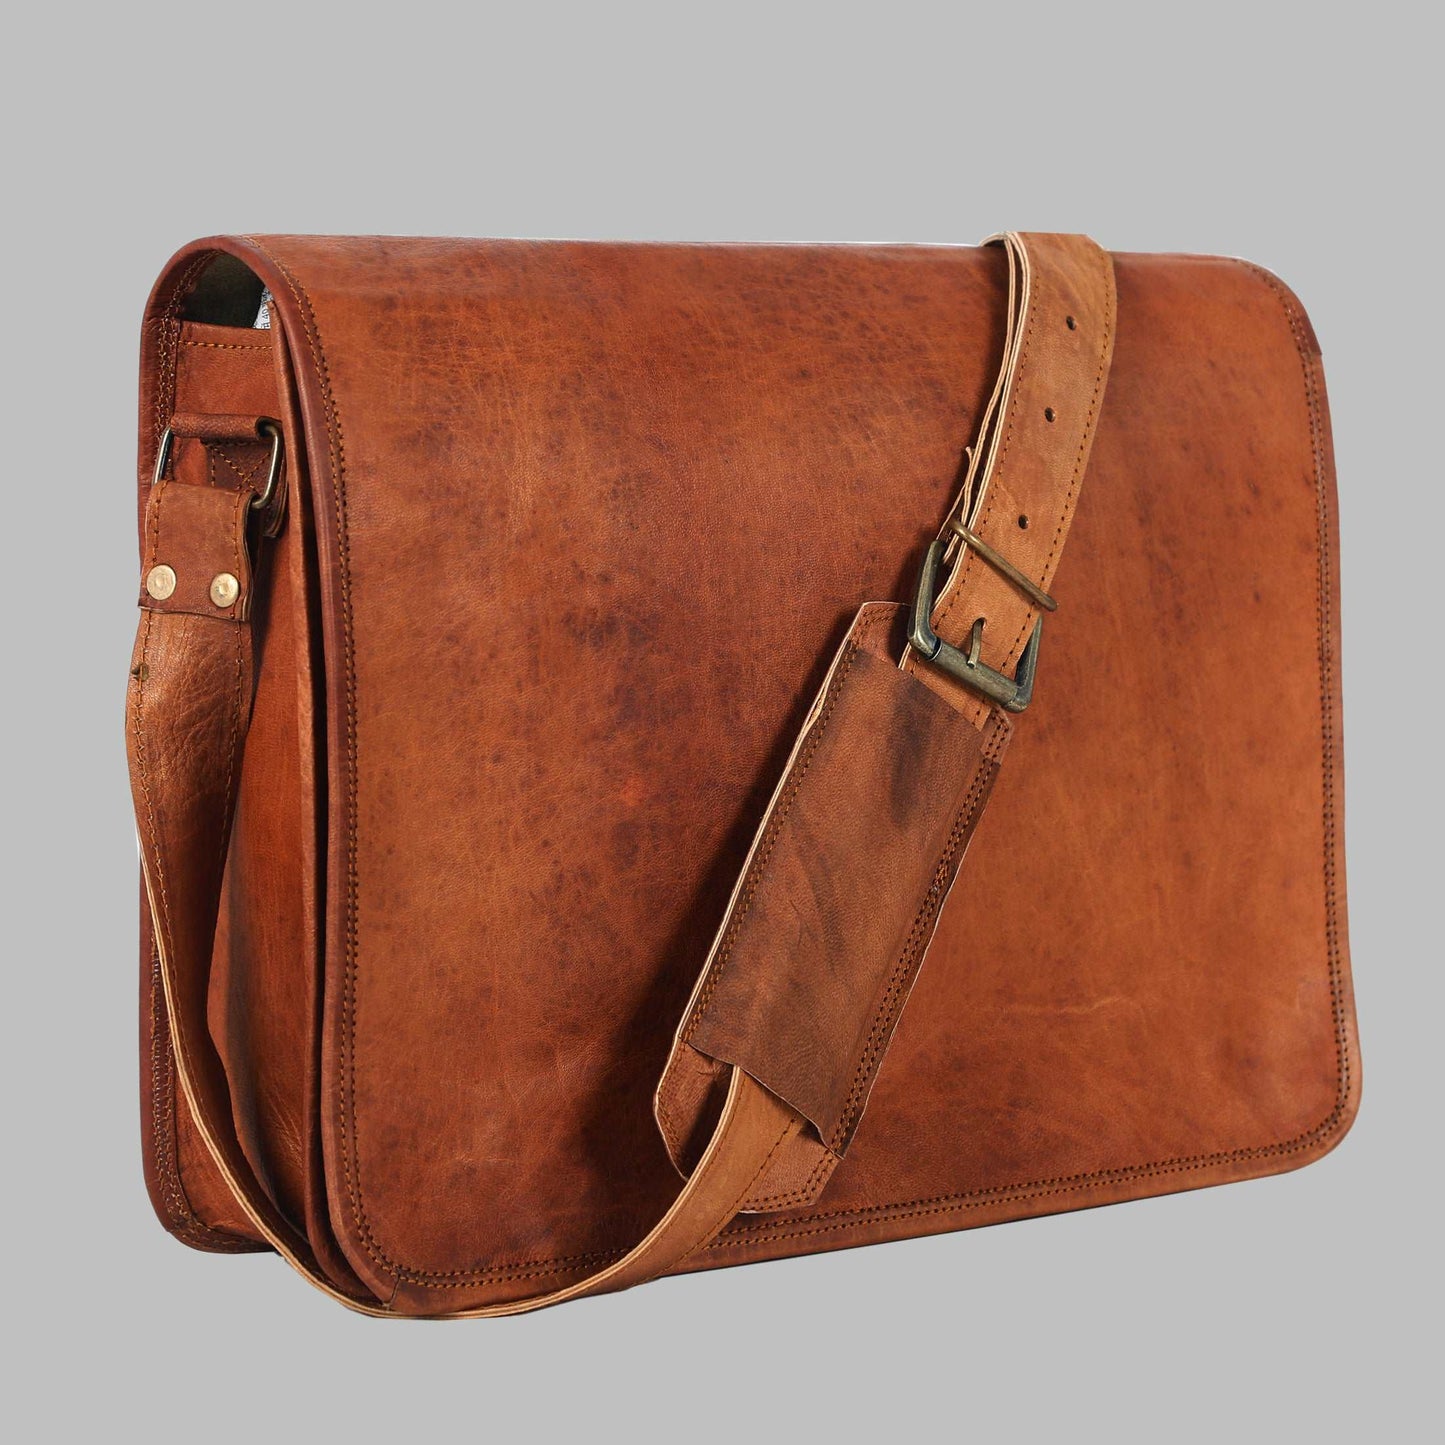 Vintage Crossbody Genuine Leather Laptop Messenger Bag Gifts for Him Her